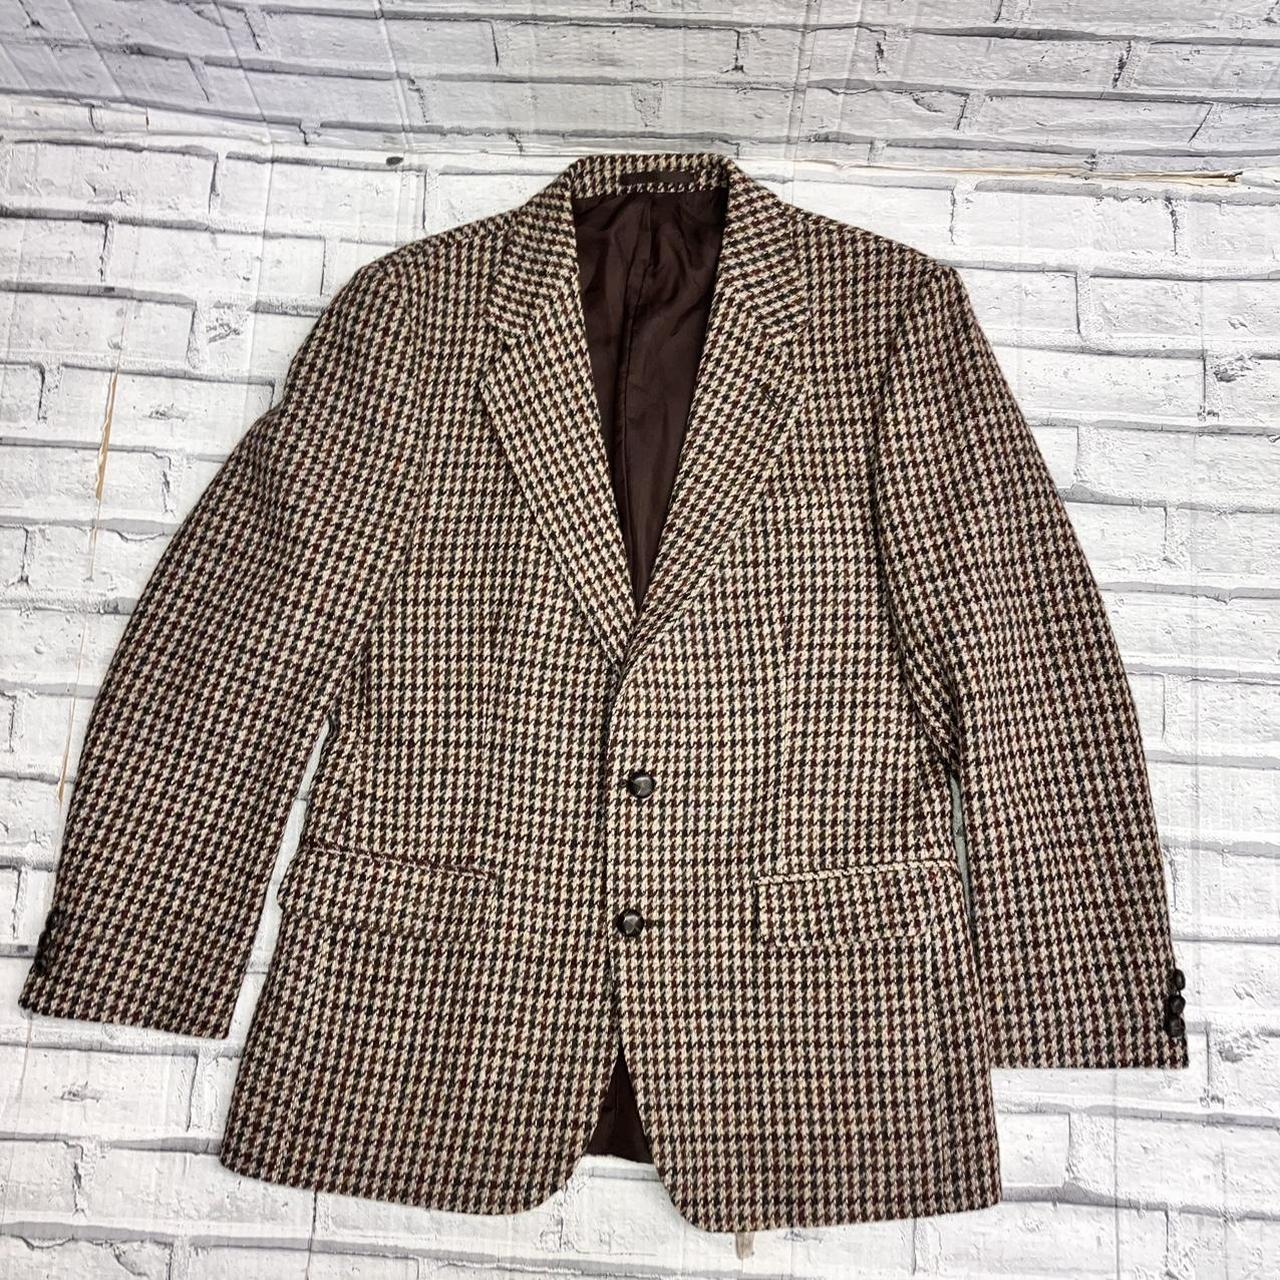 Beautiful vintage Harris Tweed 100% wool tweed brown... - Depop